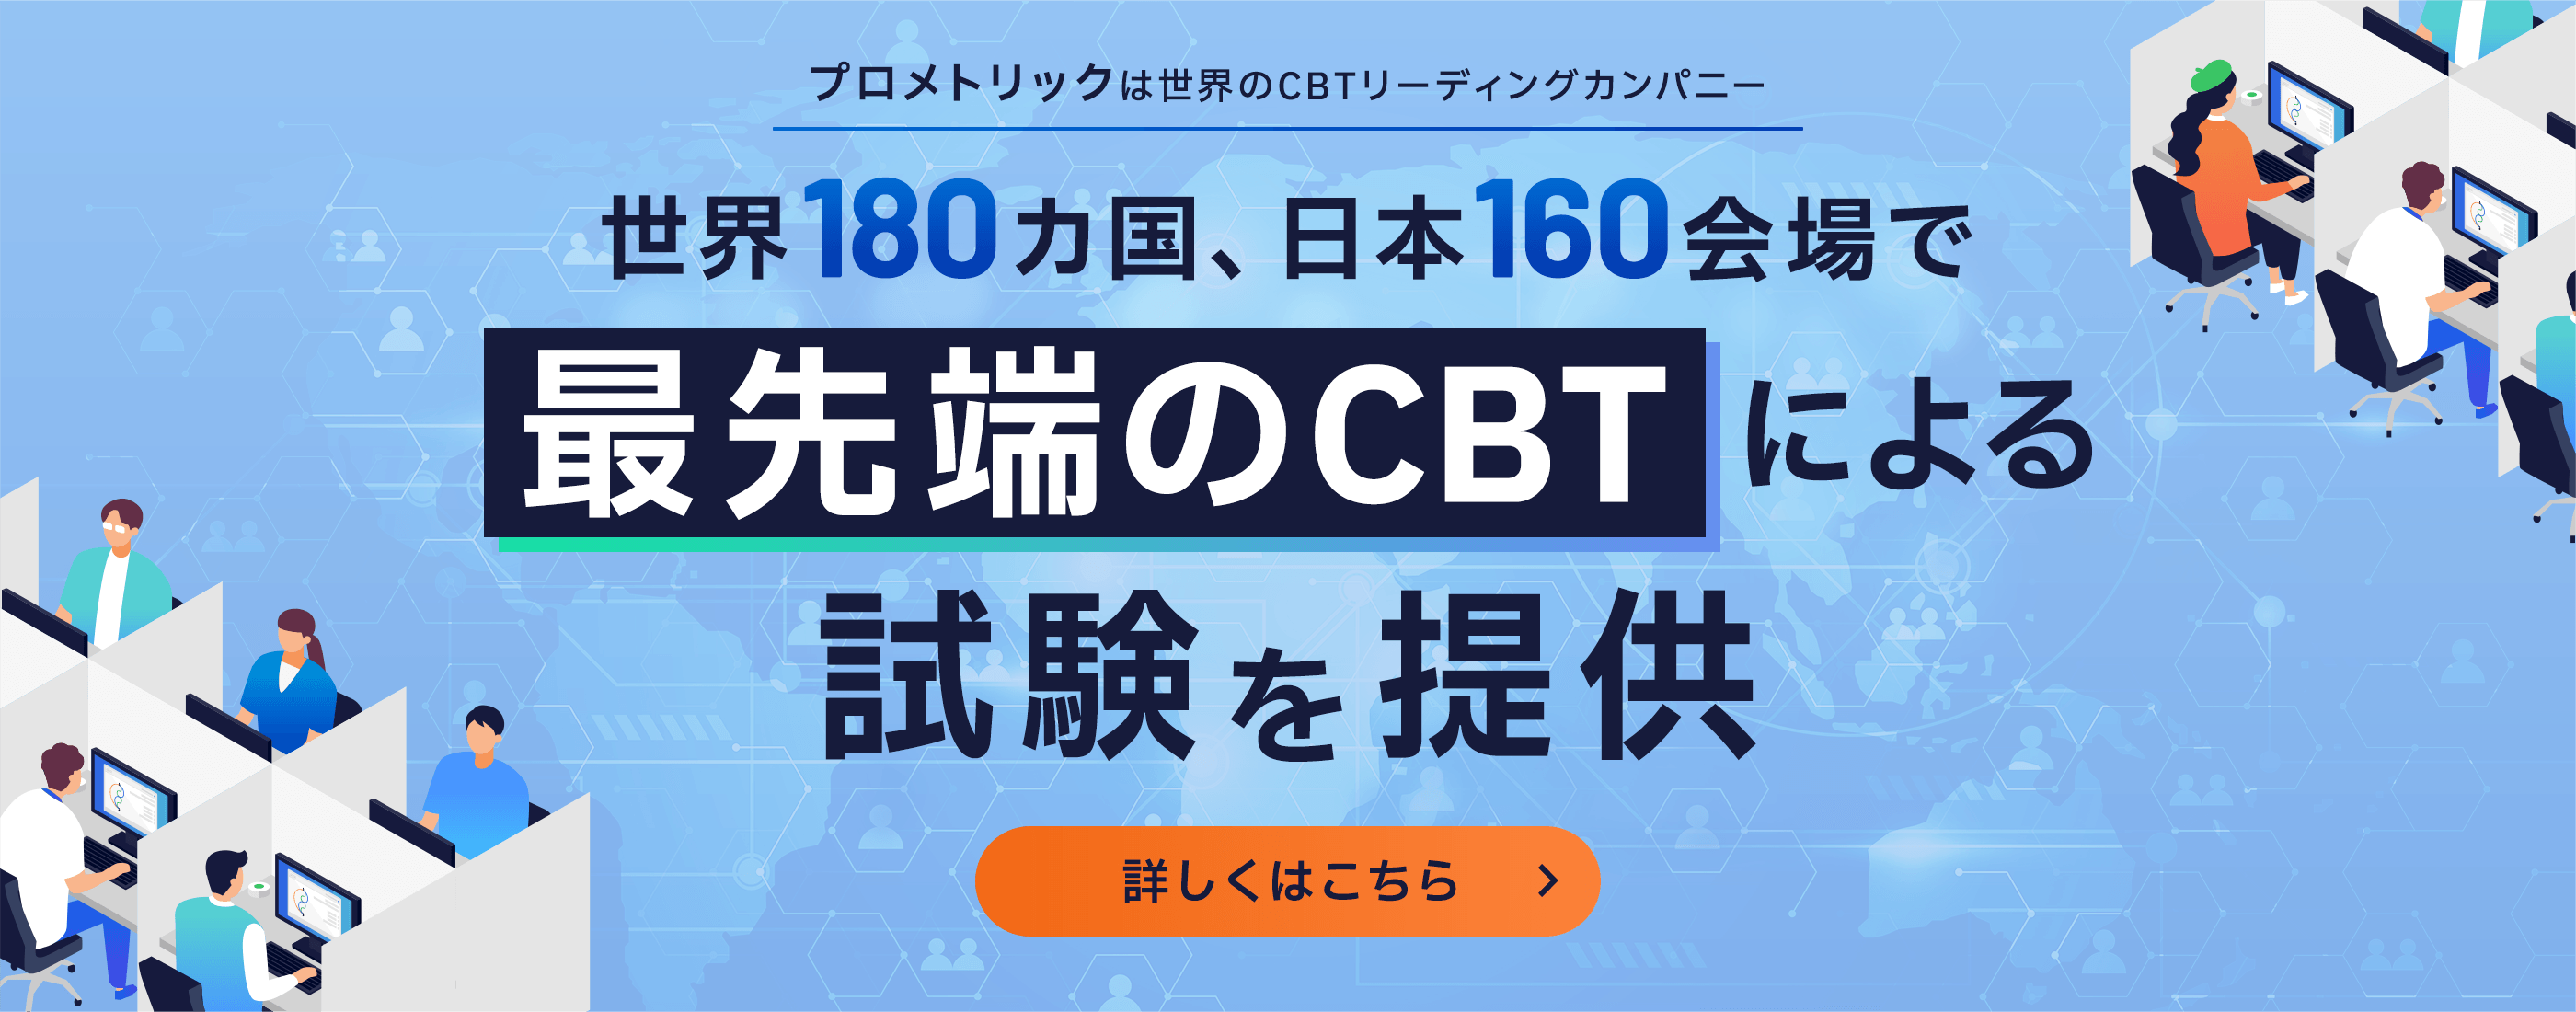 プロメトリックは世界のCBTリーディングカンパニー 世界180カ国、日本160会場で最先端のCBTによる試験を提供 詳しくはこちら